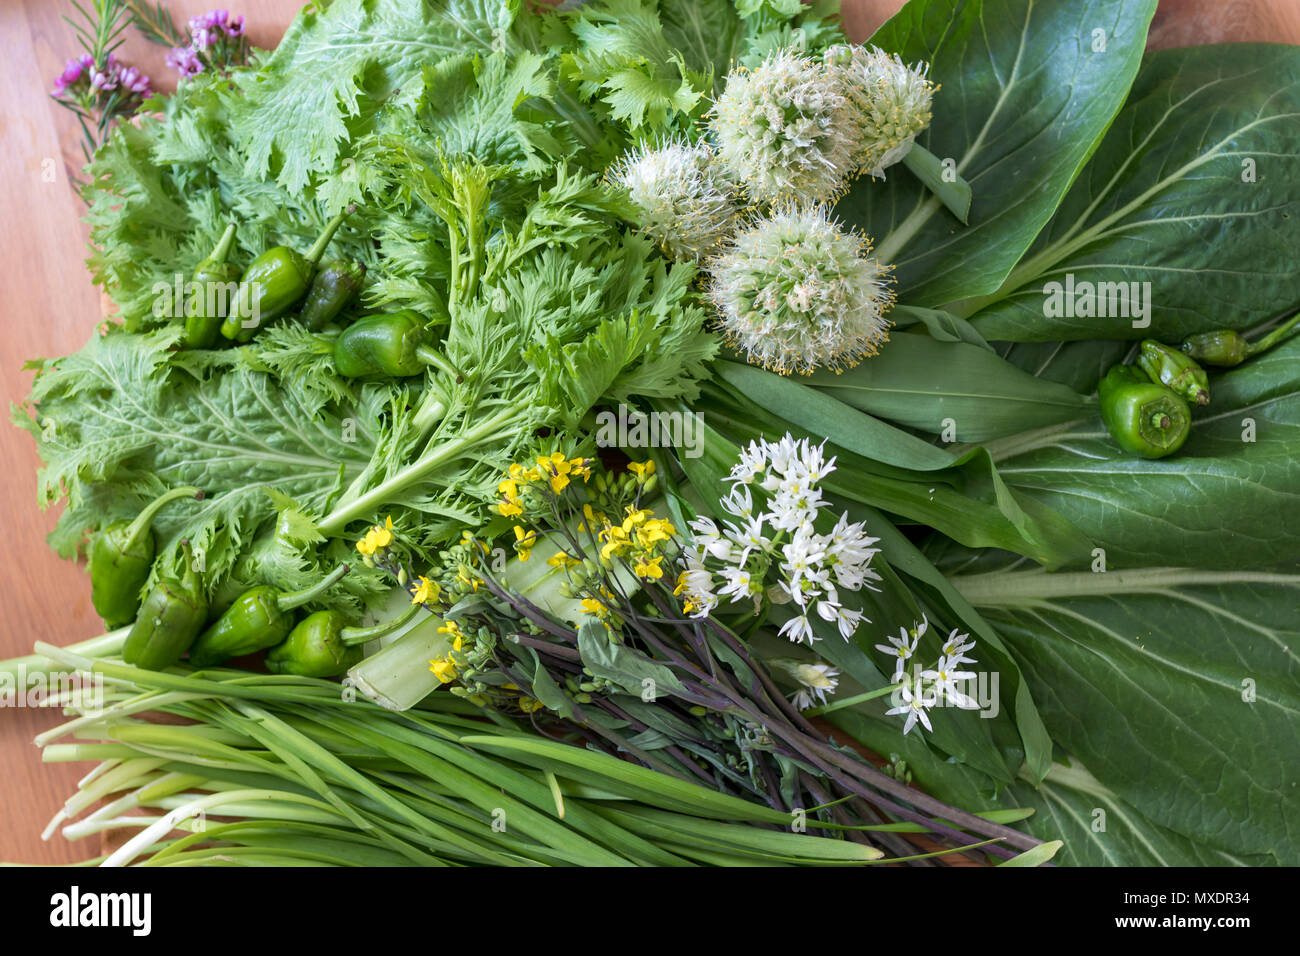 La fioritura e di foglia verde asiatico (prevalentemente giapponese) verdure organiche. Appena raccolto e ideale per insalata o friggere. Foto Stock